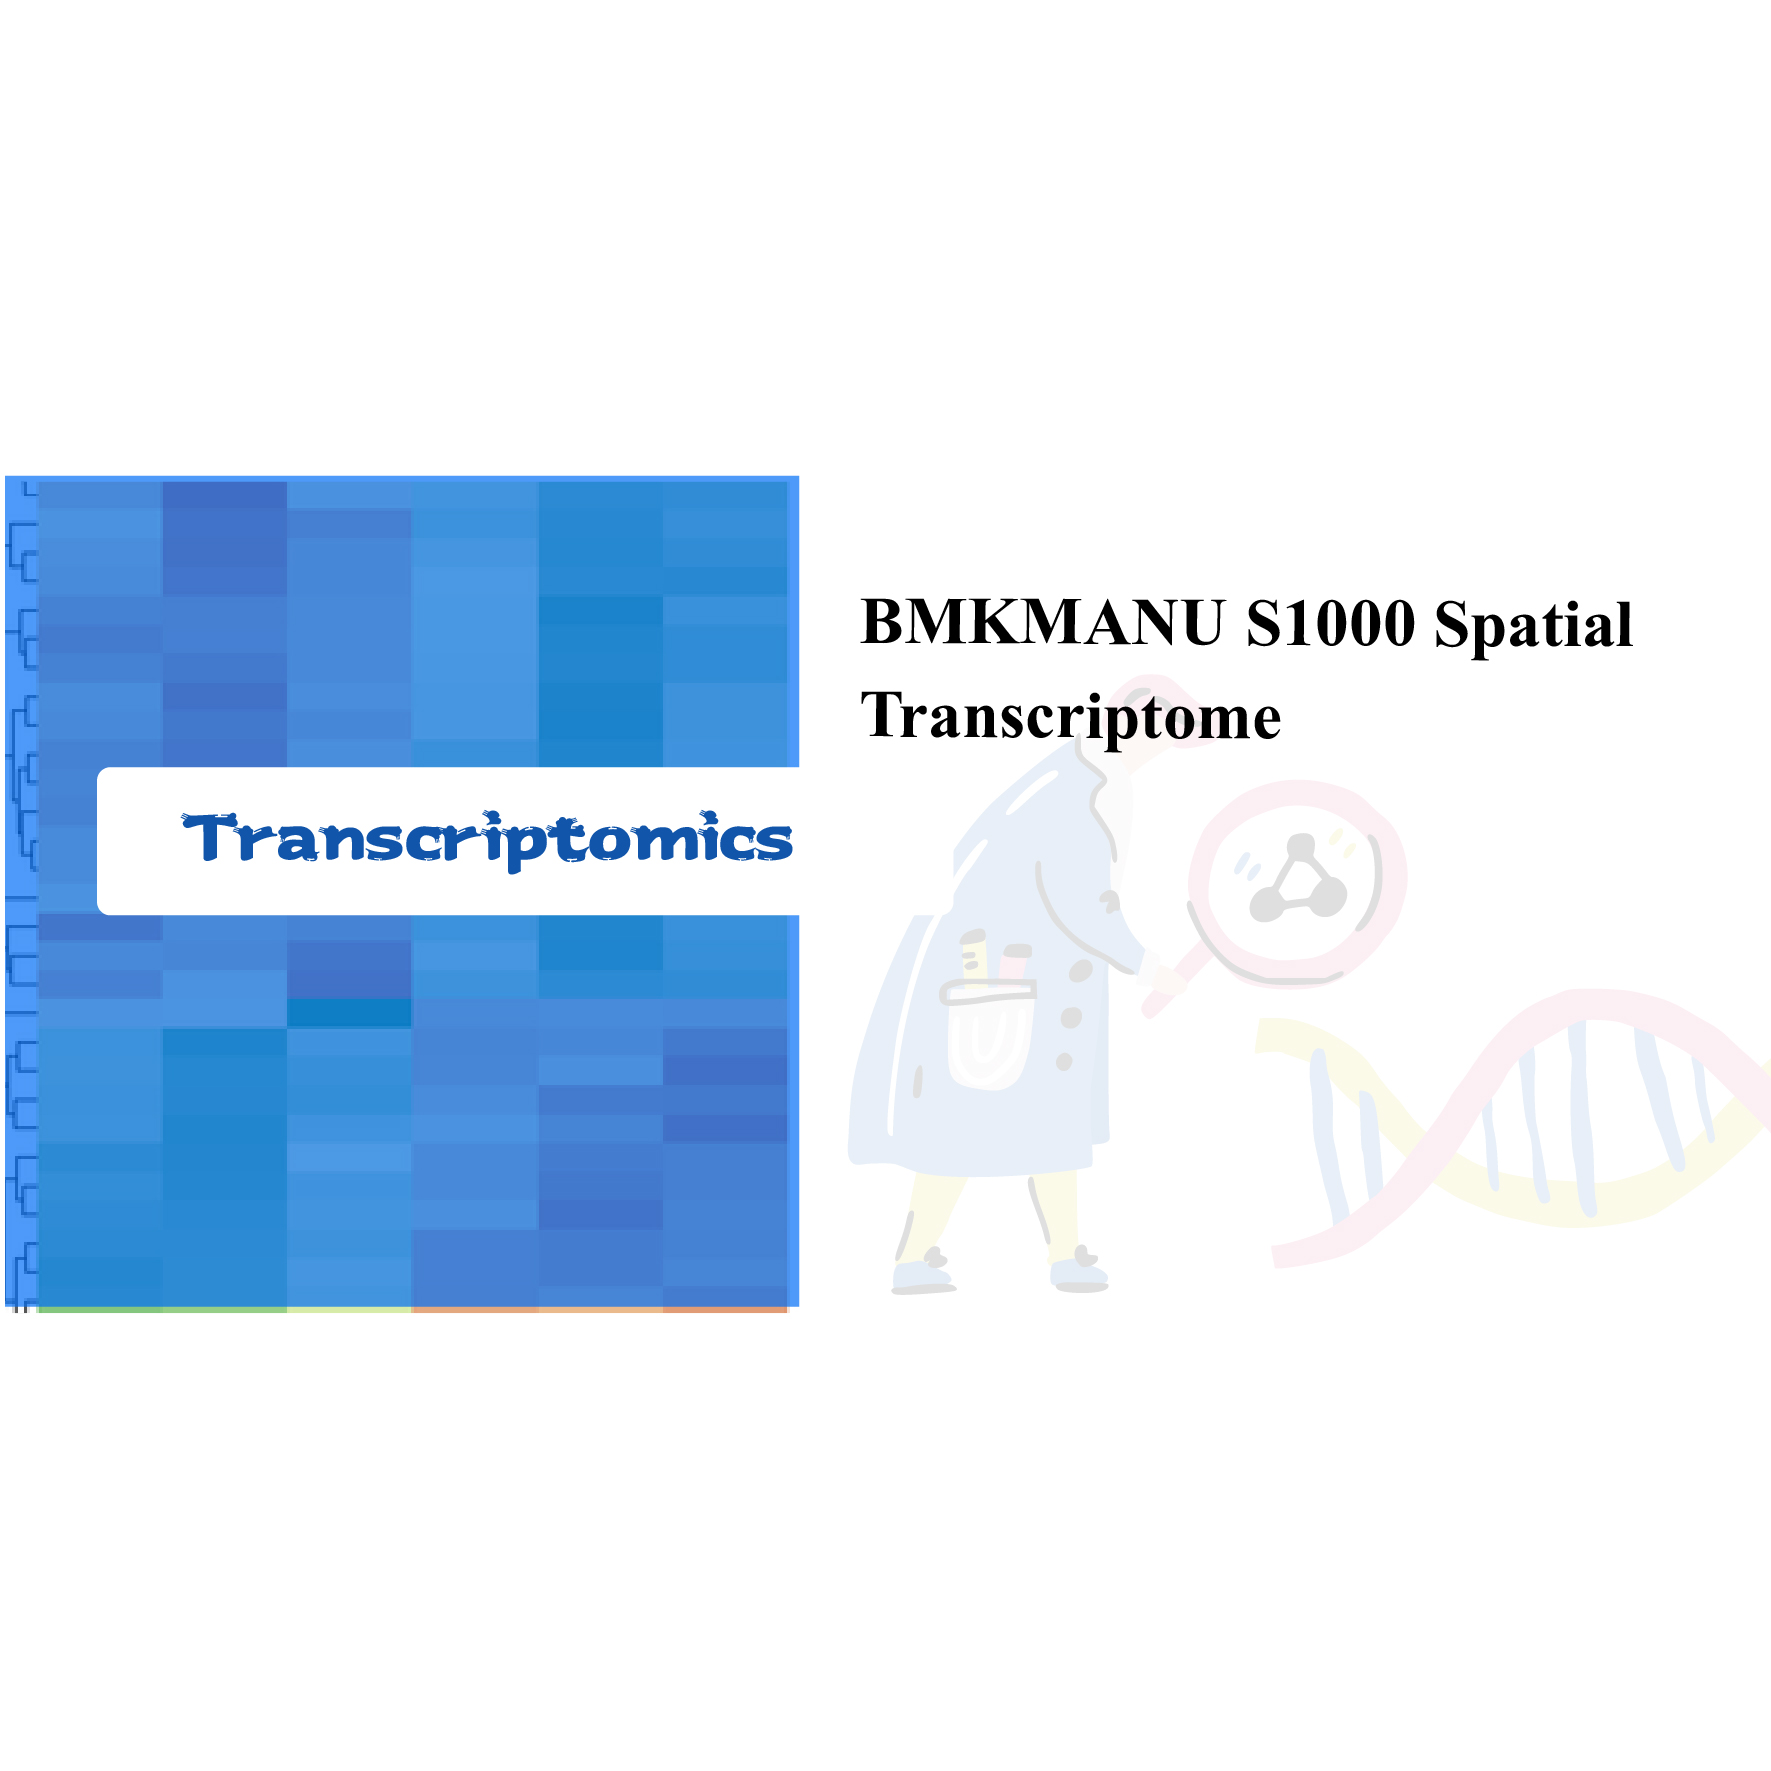 BMKMANU S1000 Spaca Transcriptome